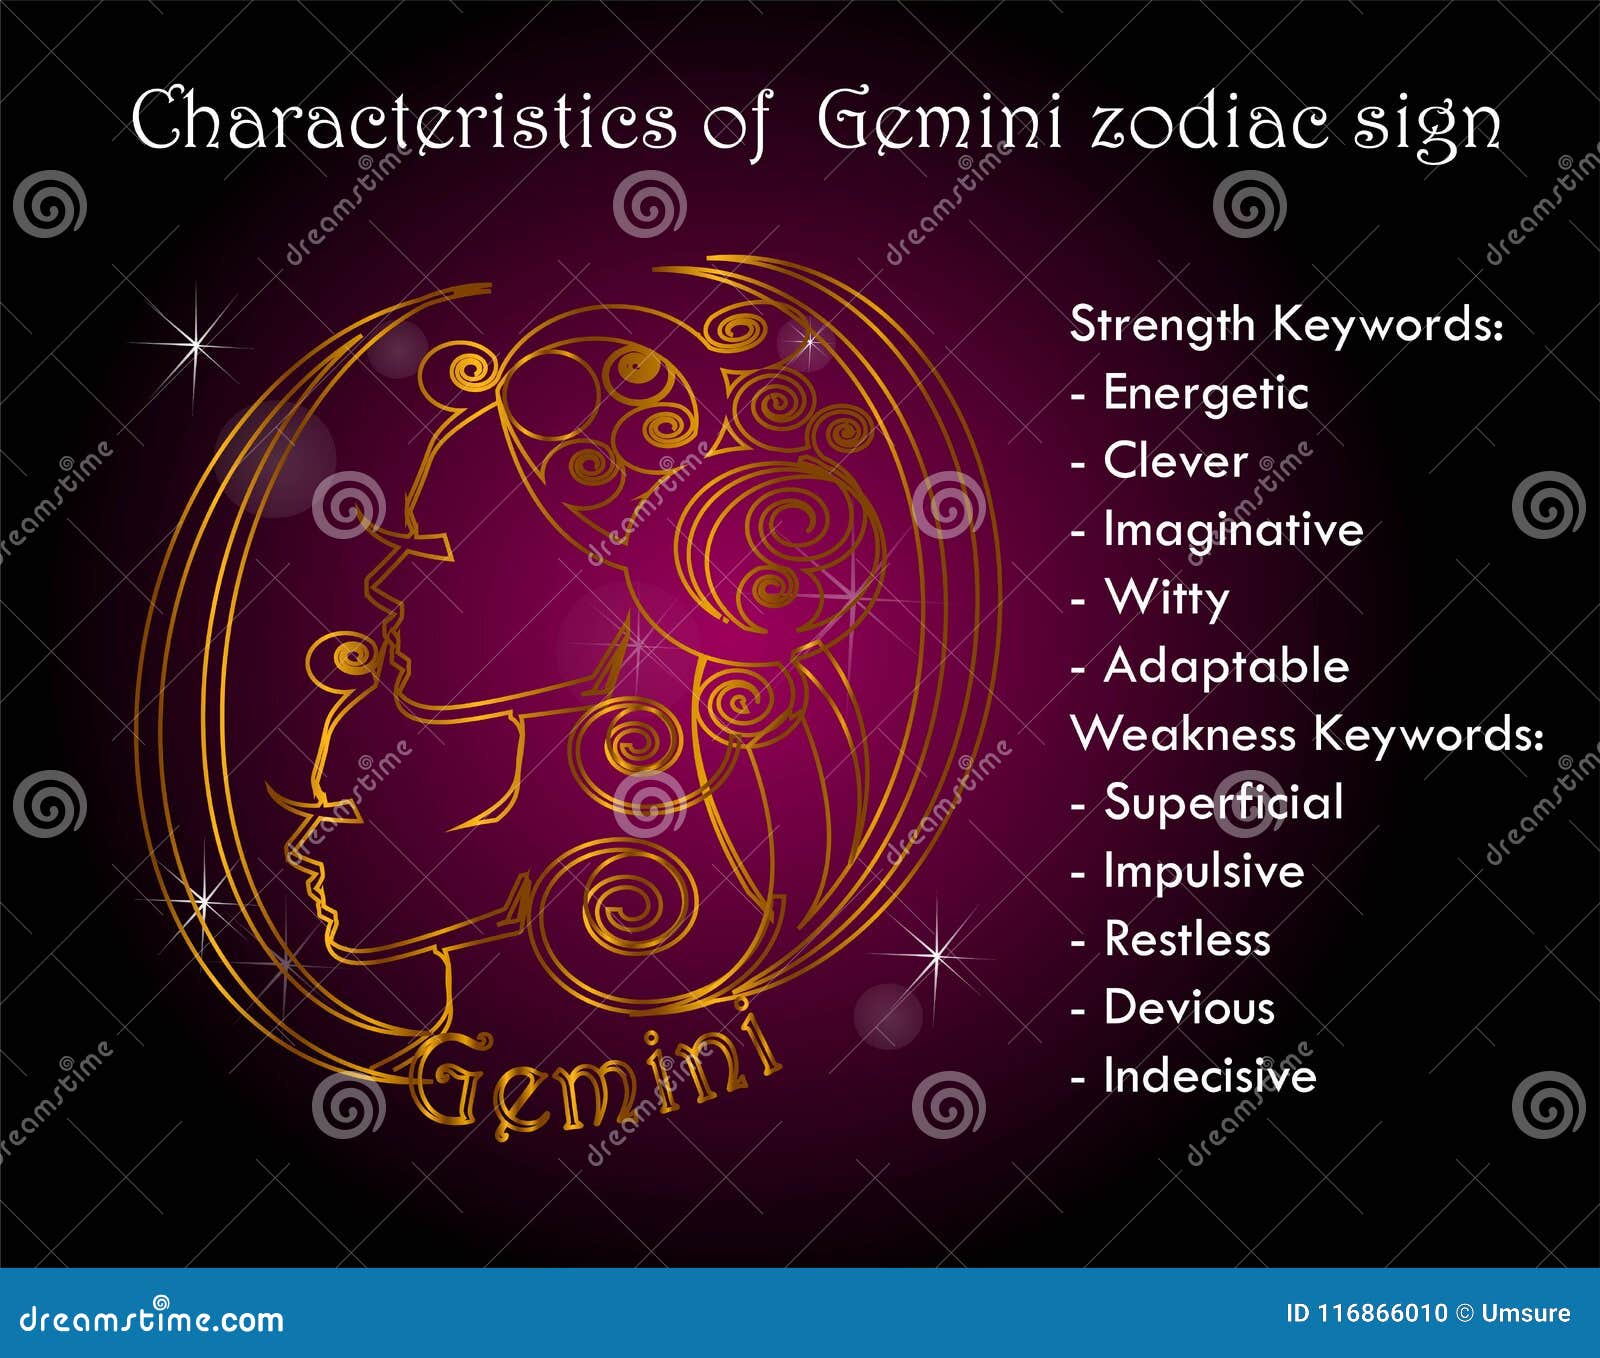 Gemini Zodiac Birth Sign Free Stock Photo - Public Domain Pictures